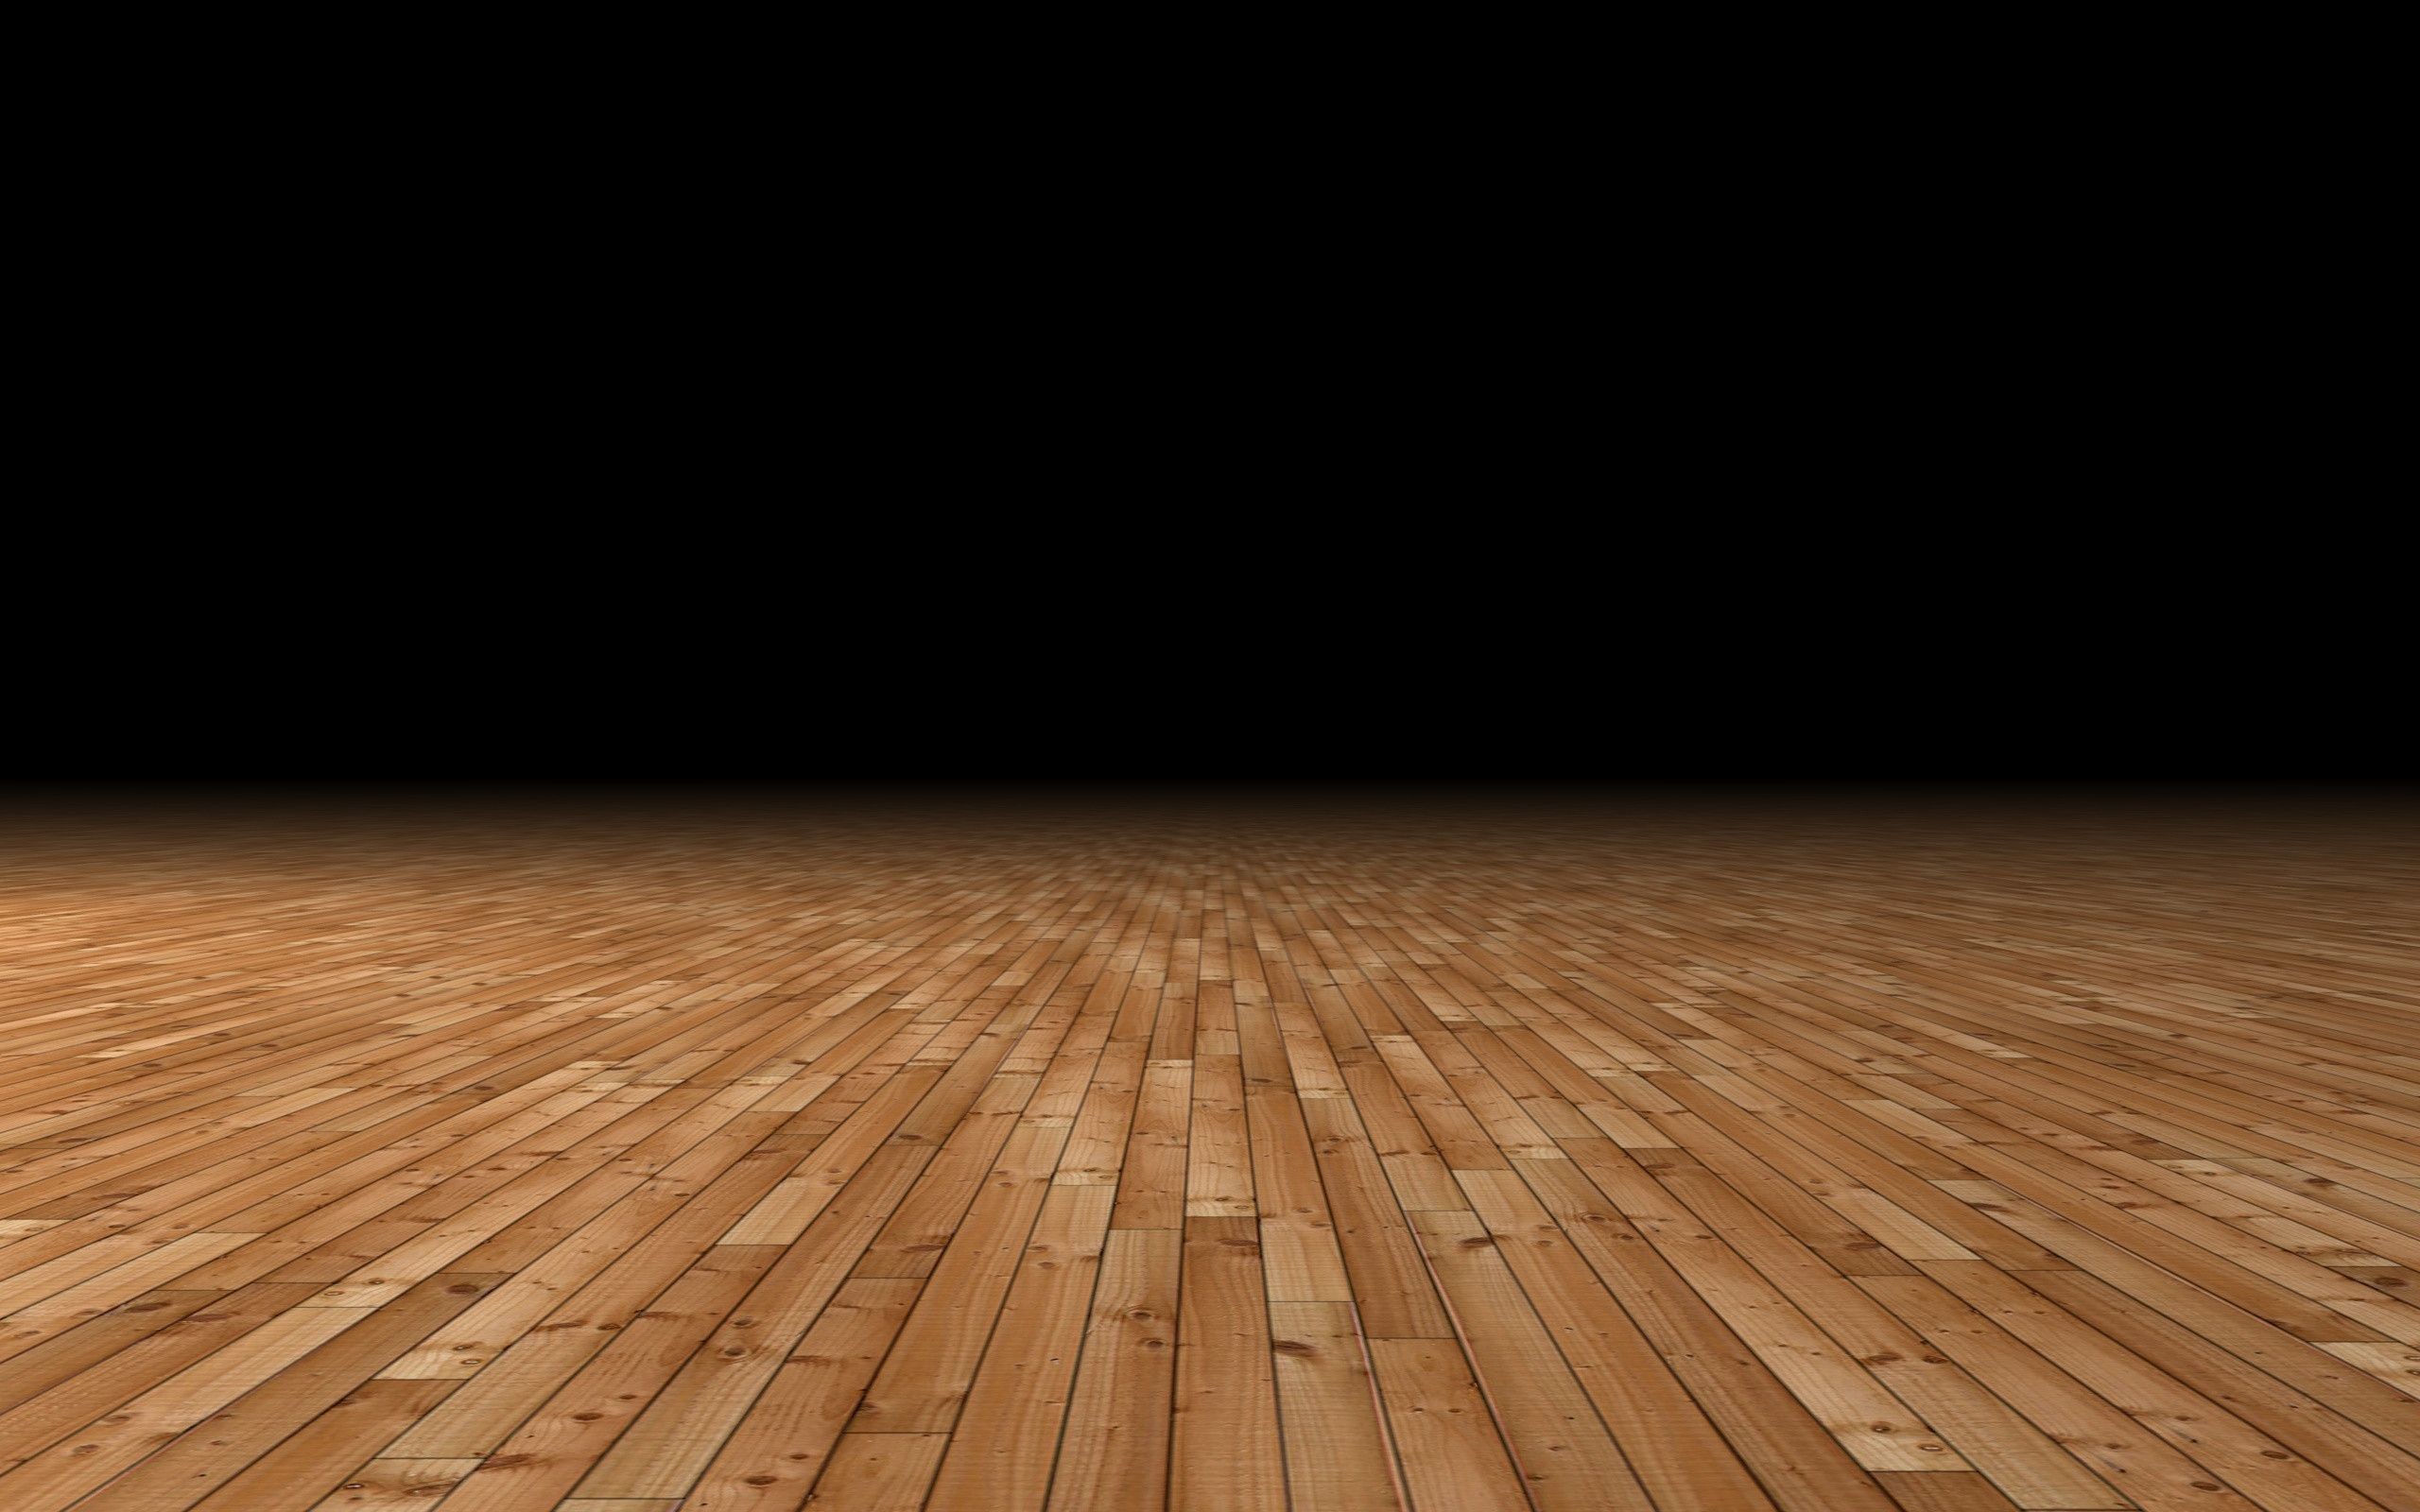 2560x1600 Basketball Court Wallpaper HD